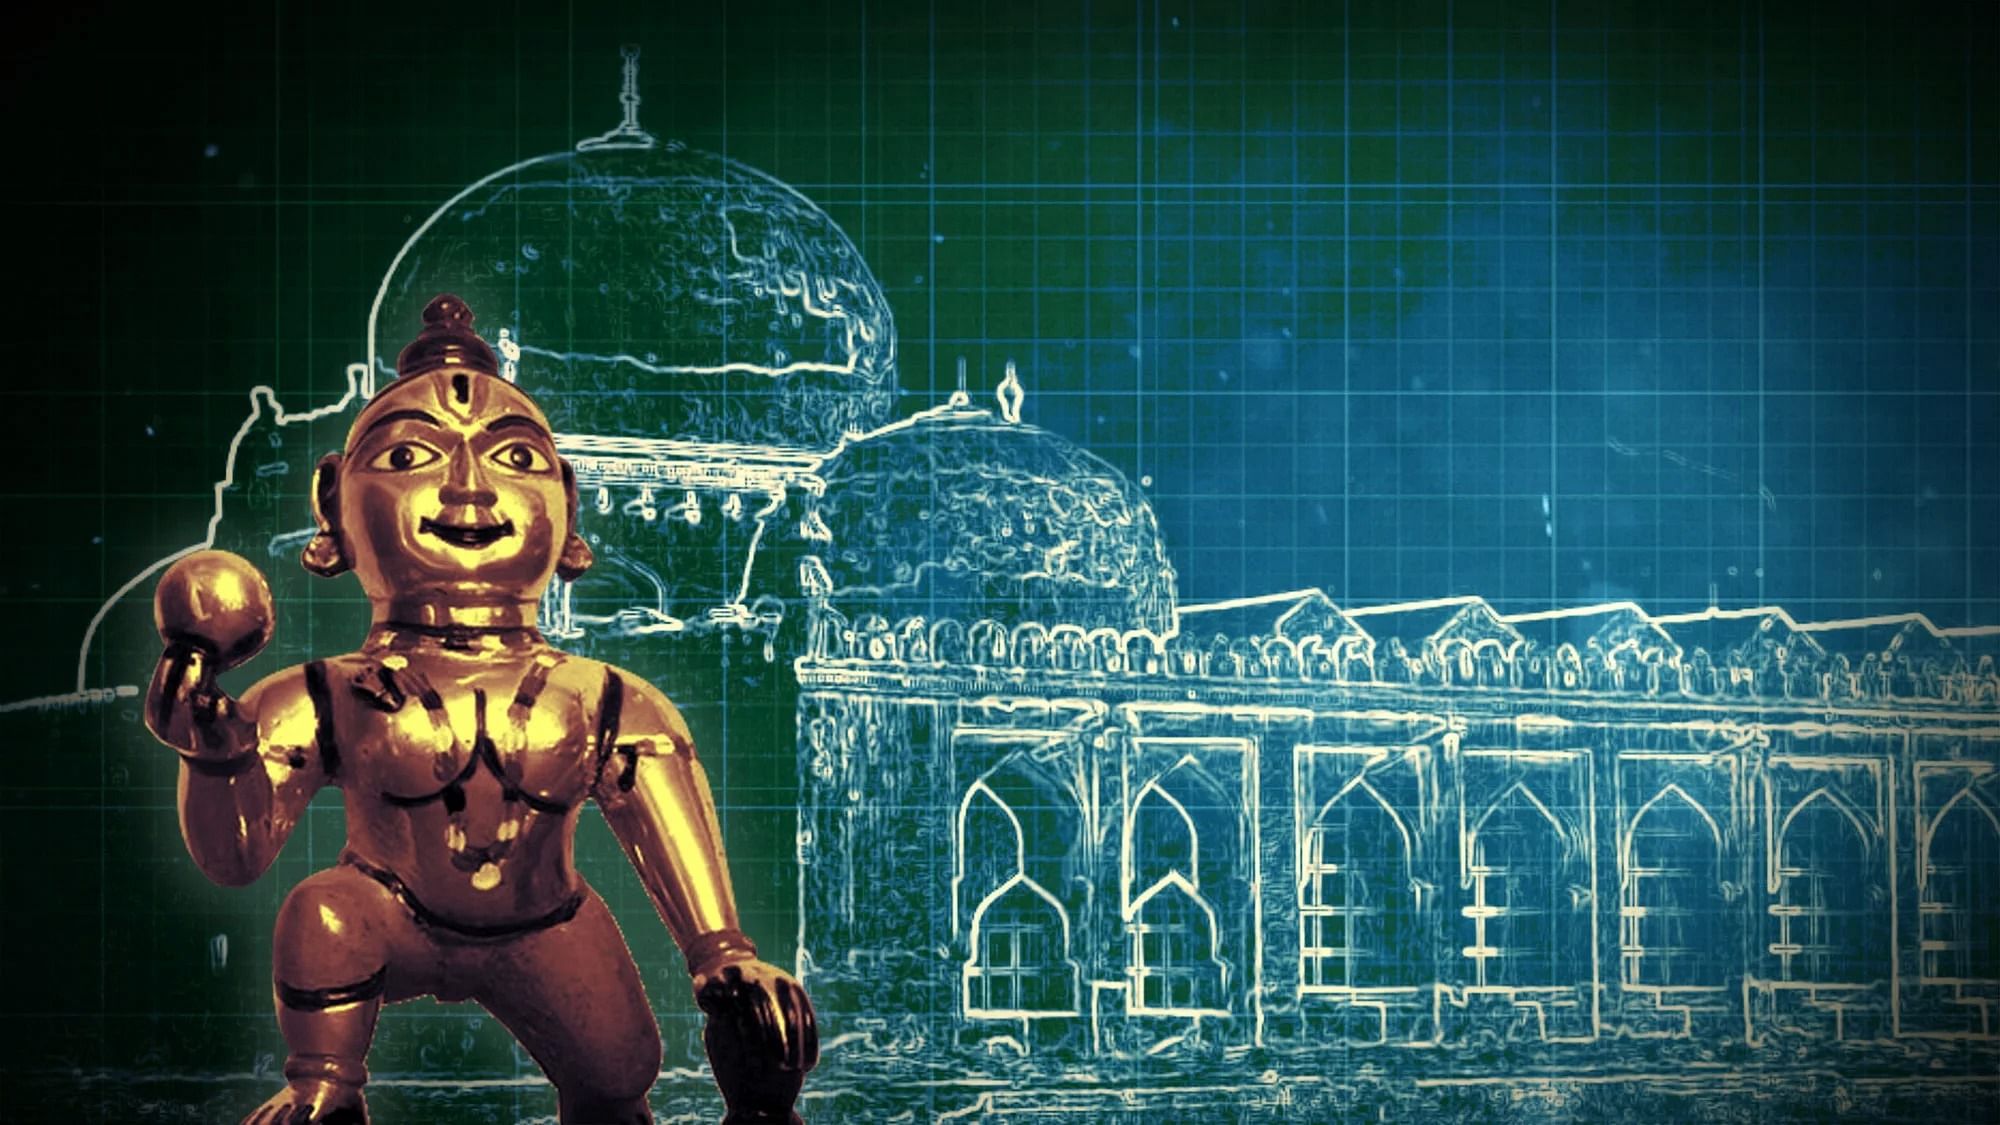 Representational image of Ram Janmabhoomi-Babri Masjid dispute.